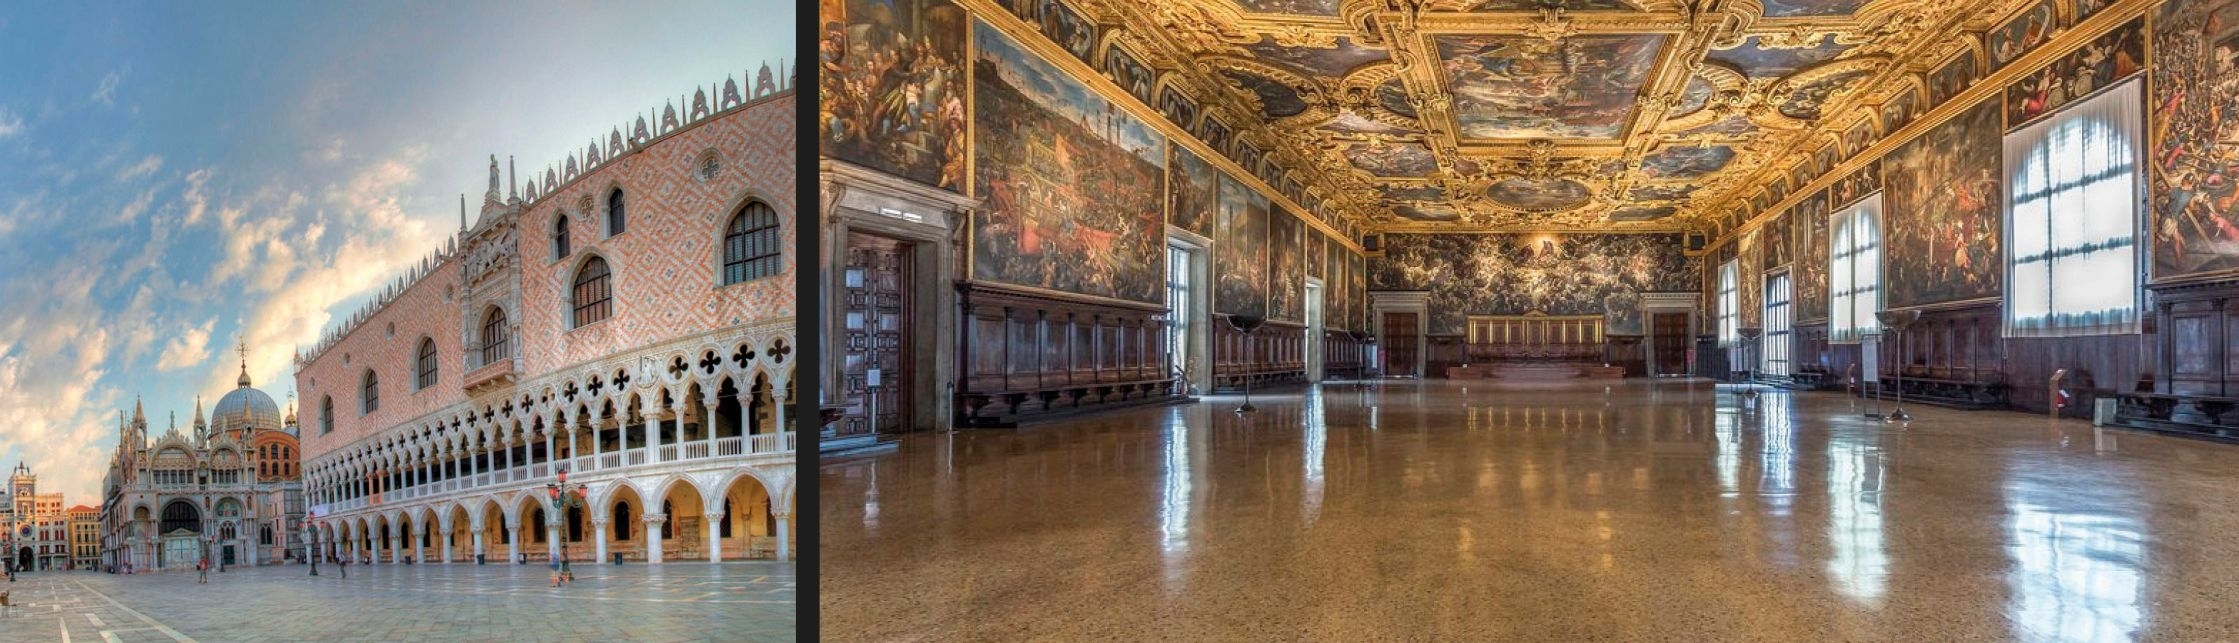 Rivestimenti-pavimenti-superficie-continua-palazzo-ducale-venezia